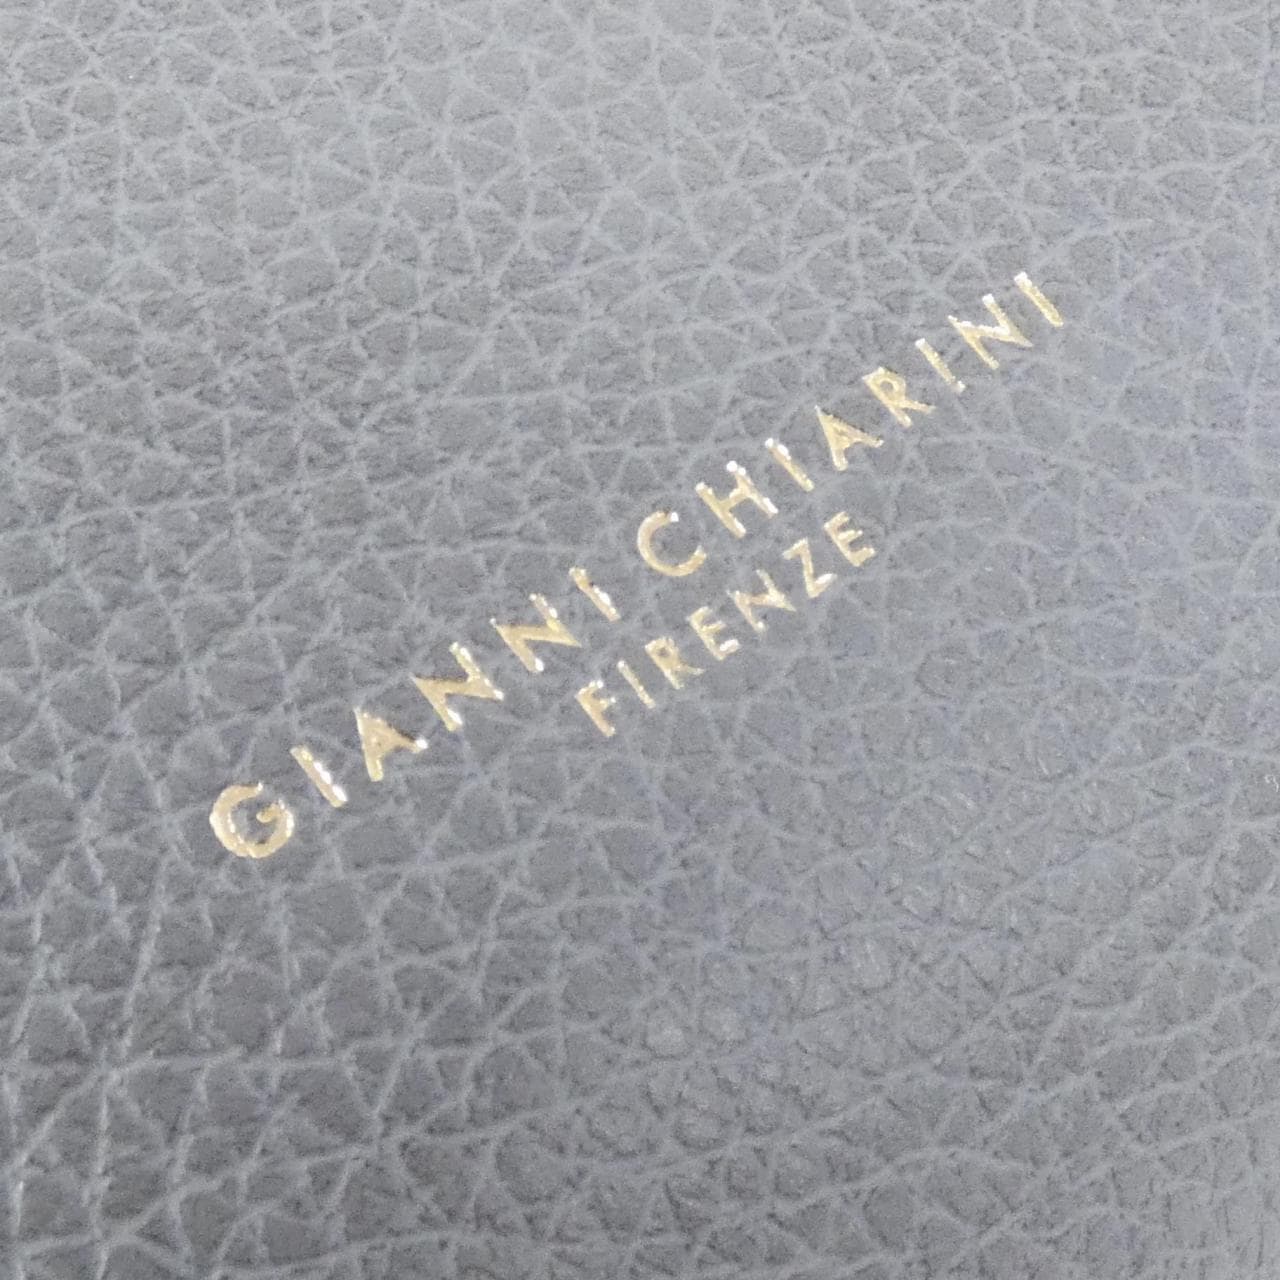 [新品] Gianni Chiarini 梅根 4191 包